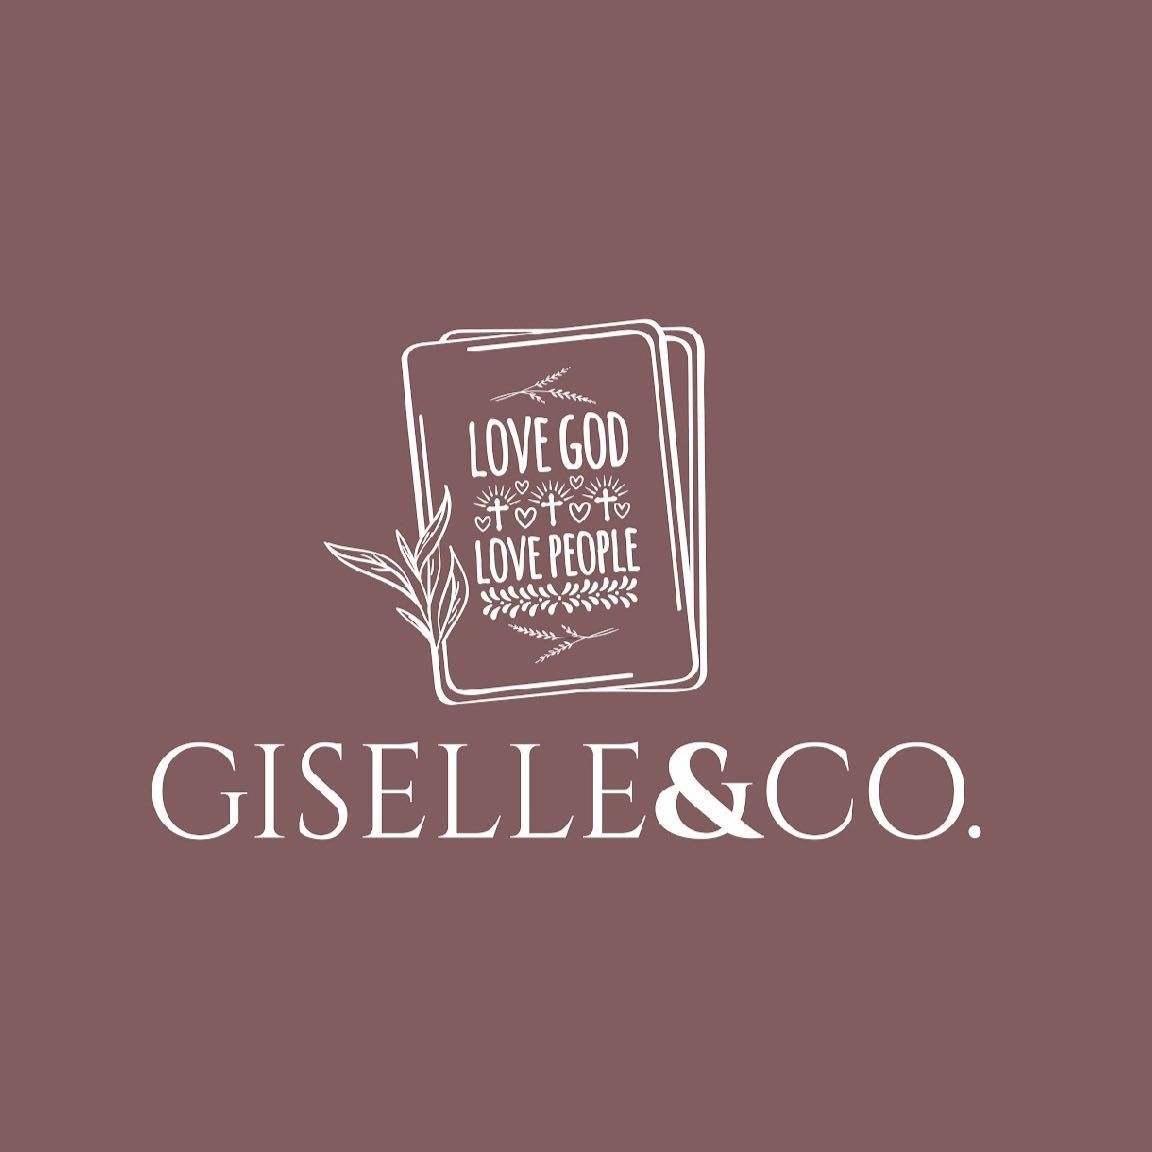 Giselle & Co., 2104 NW Military Hwy, San Antonio, 78213